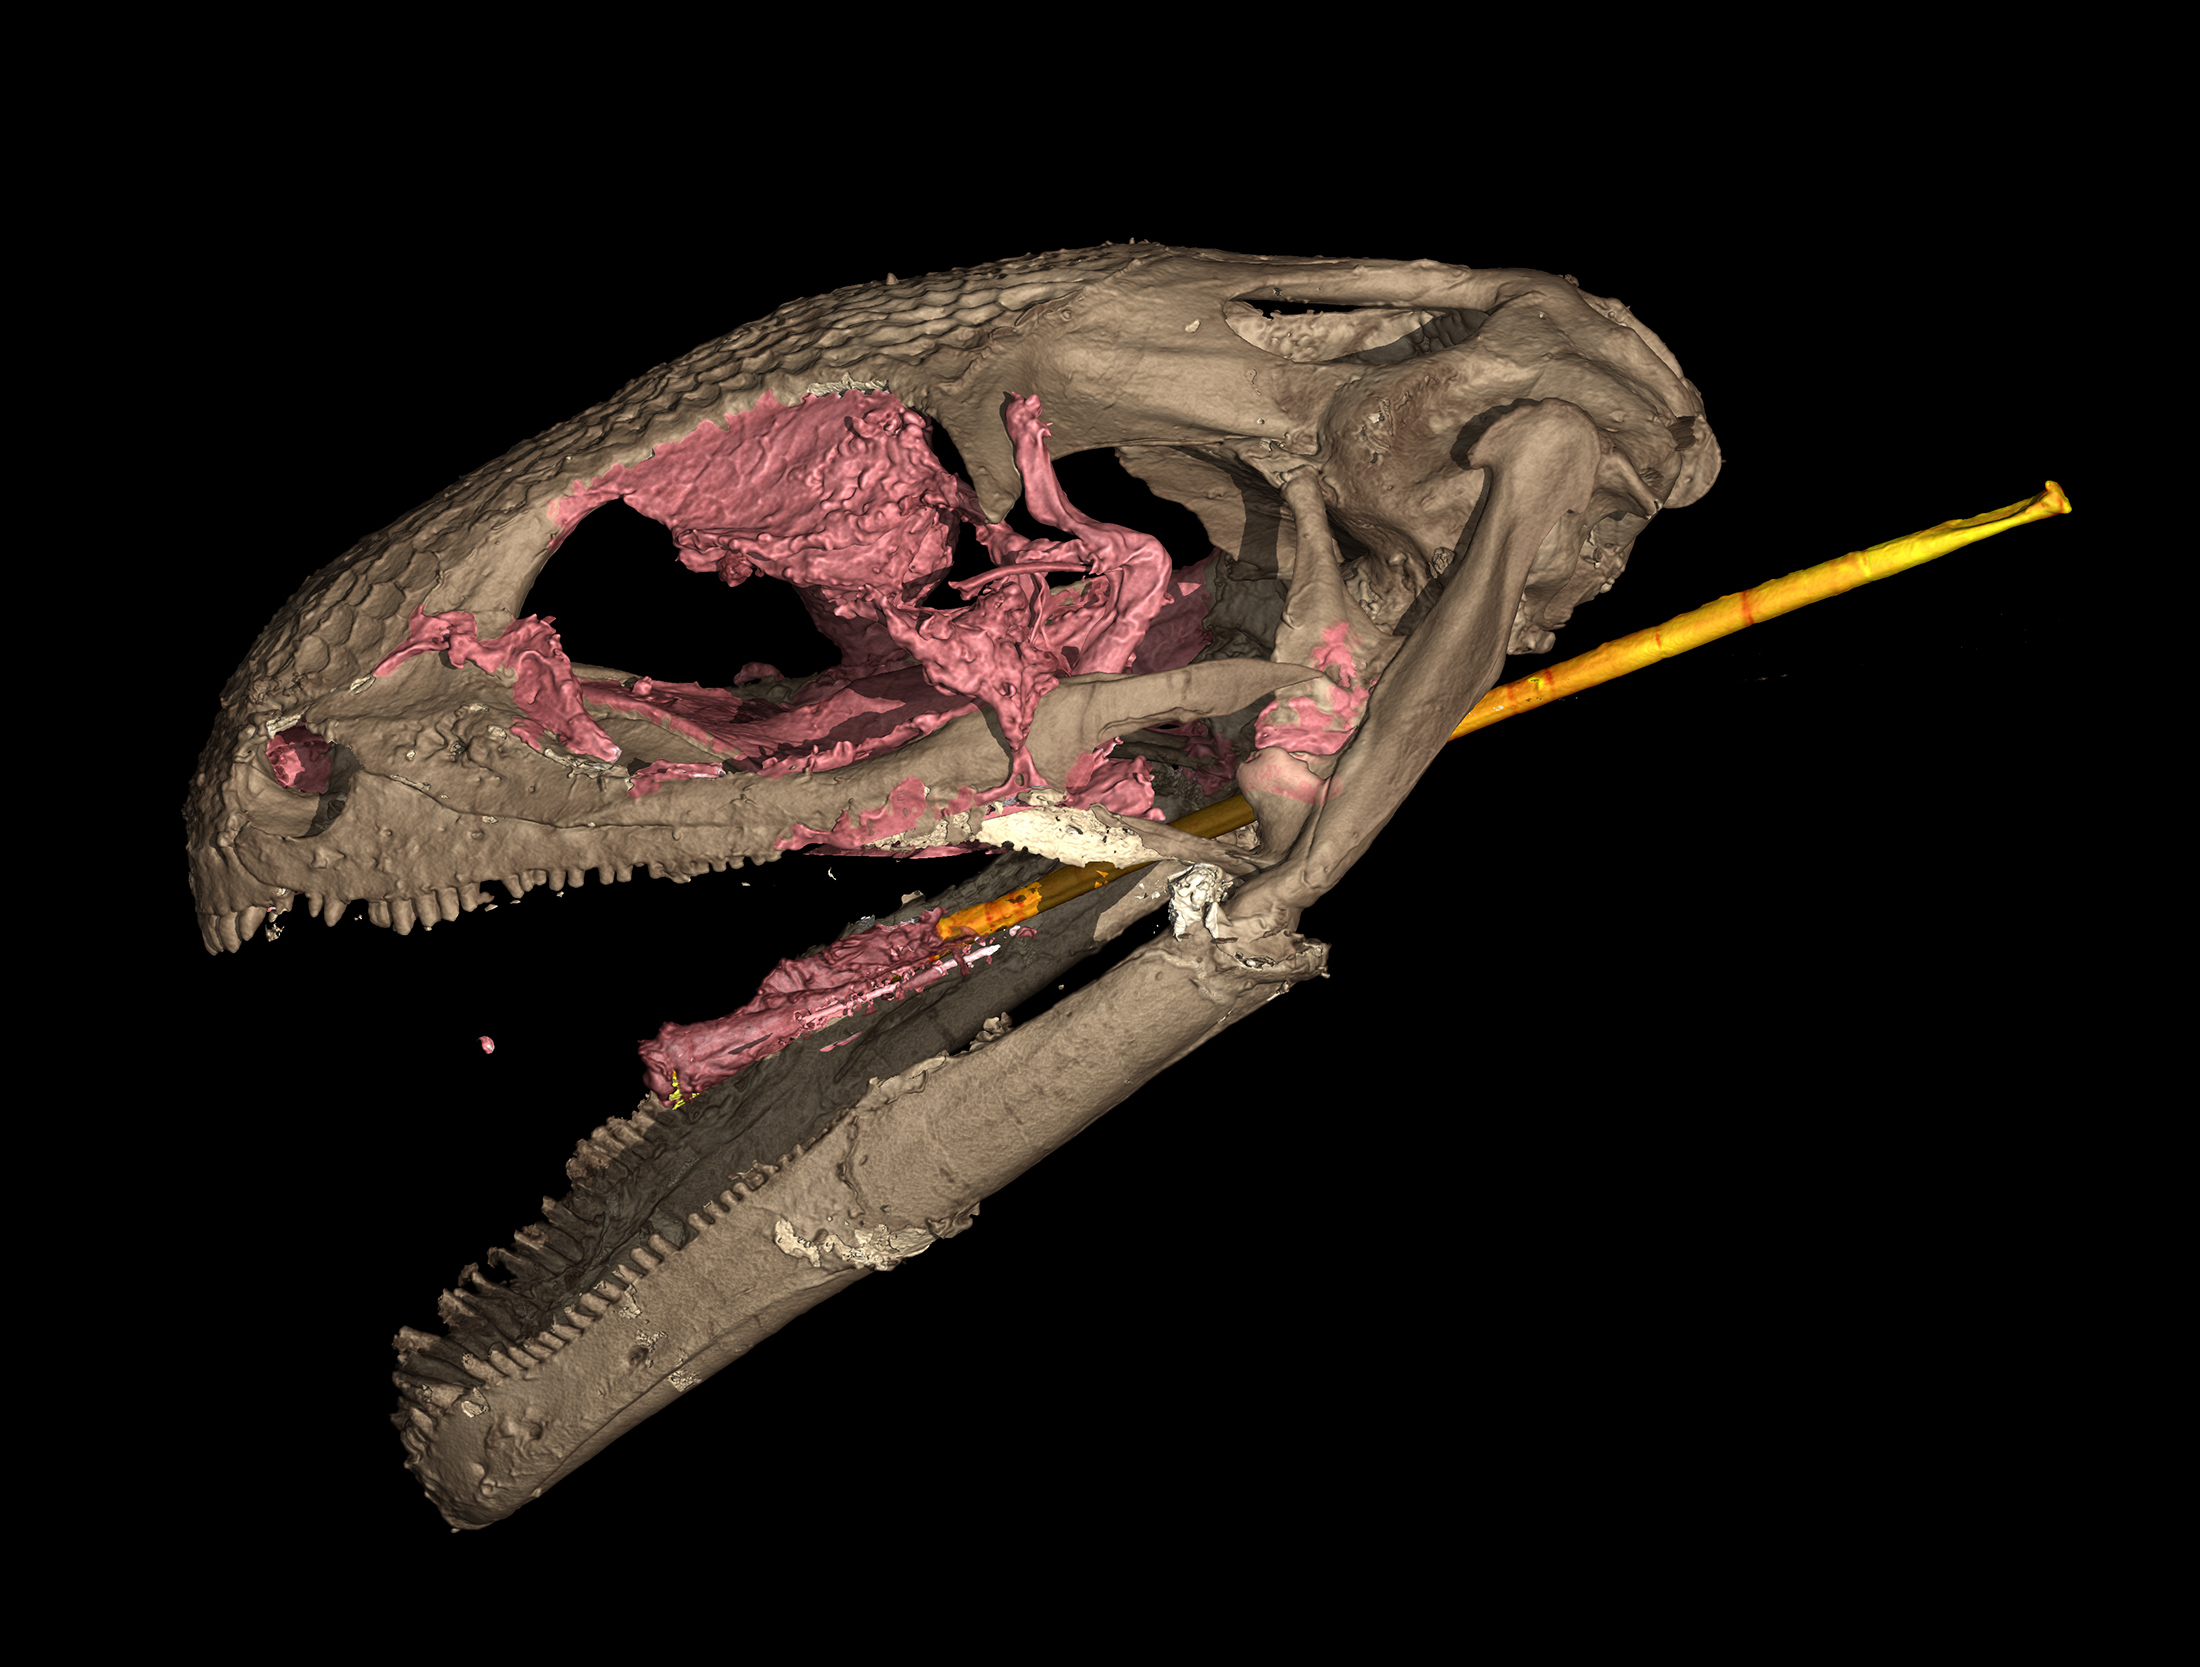 CT scan of albanerpetontid skull